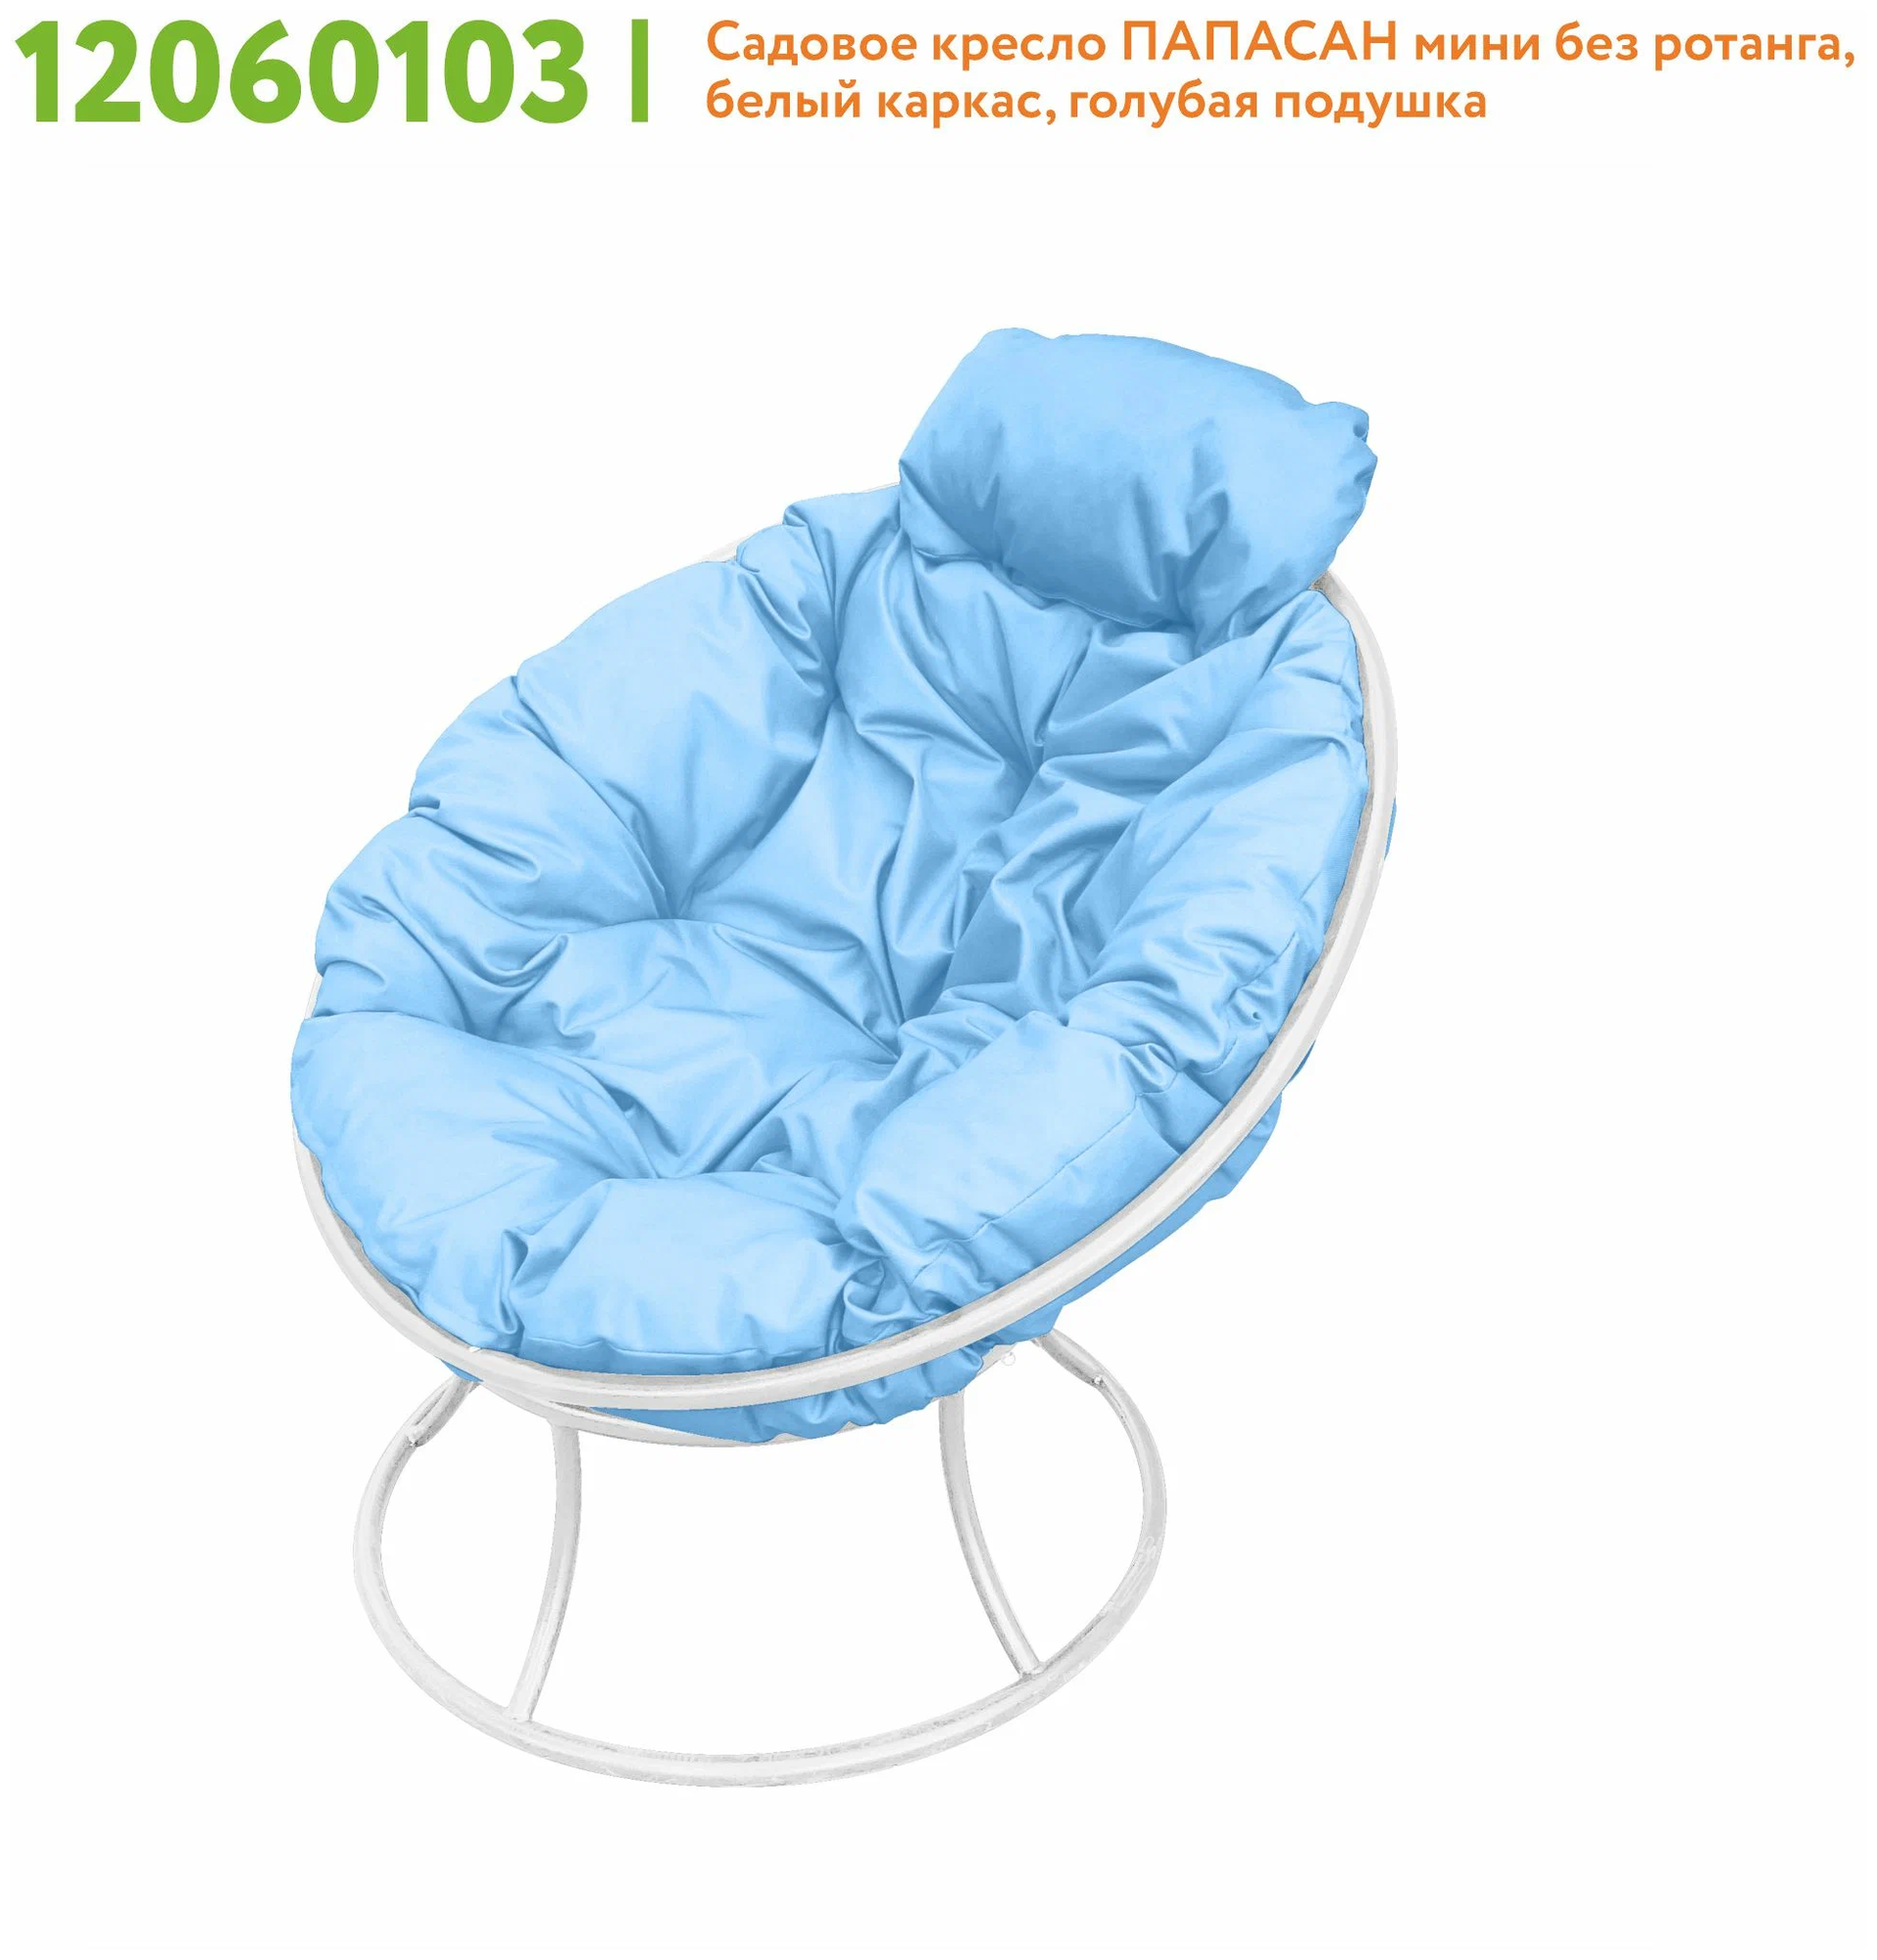 Кресло m-group папасан мини белое, голубая подушка - фотография № 2